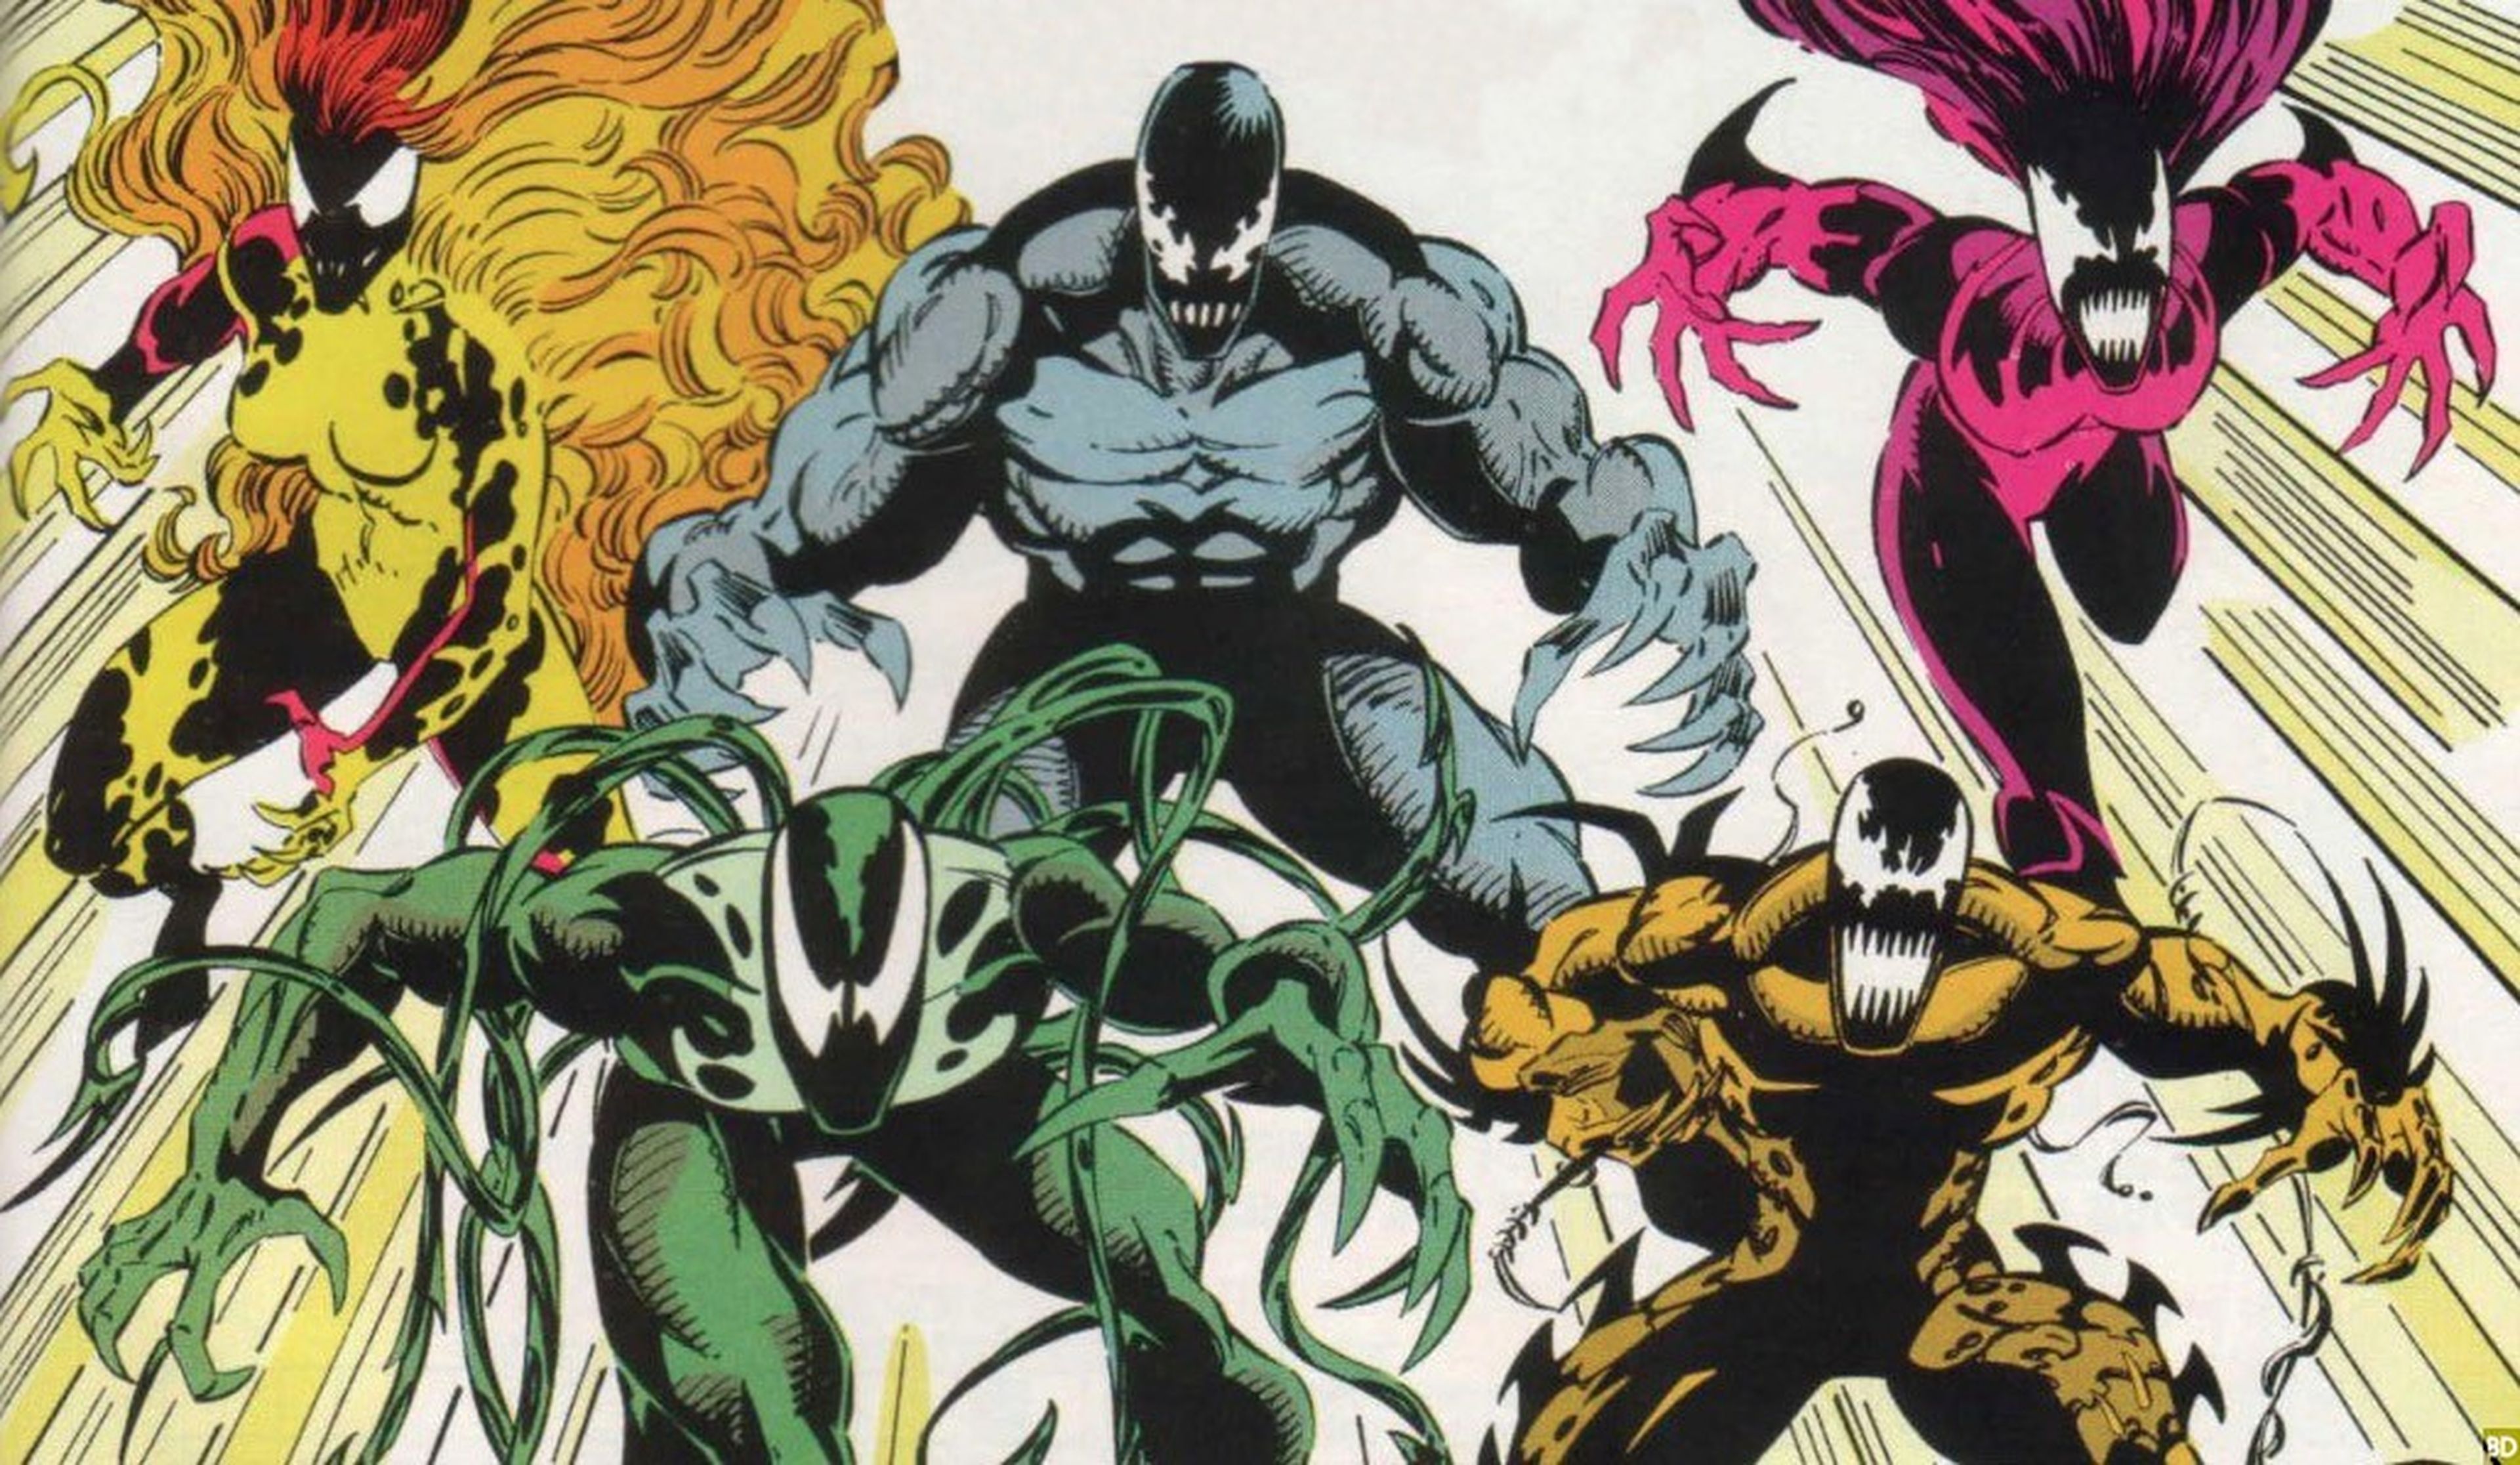 Película de Venom - Los simbiontes que podríamos ver